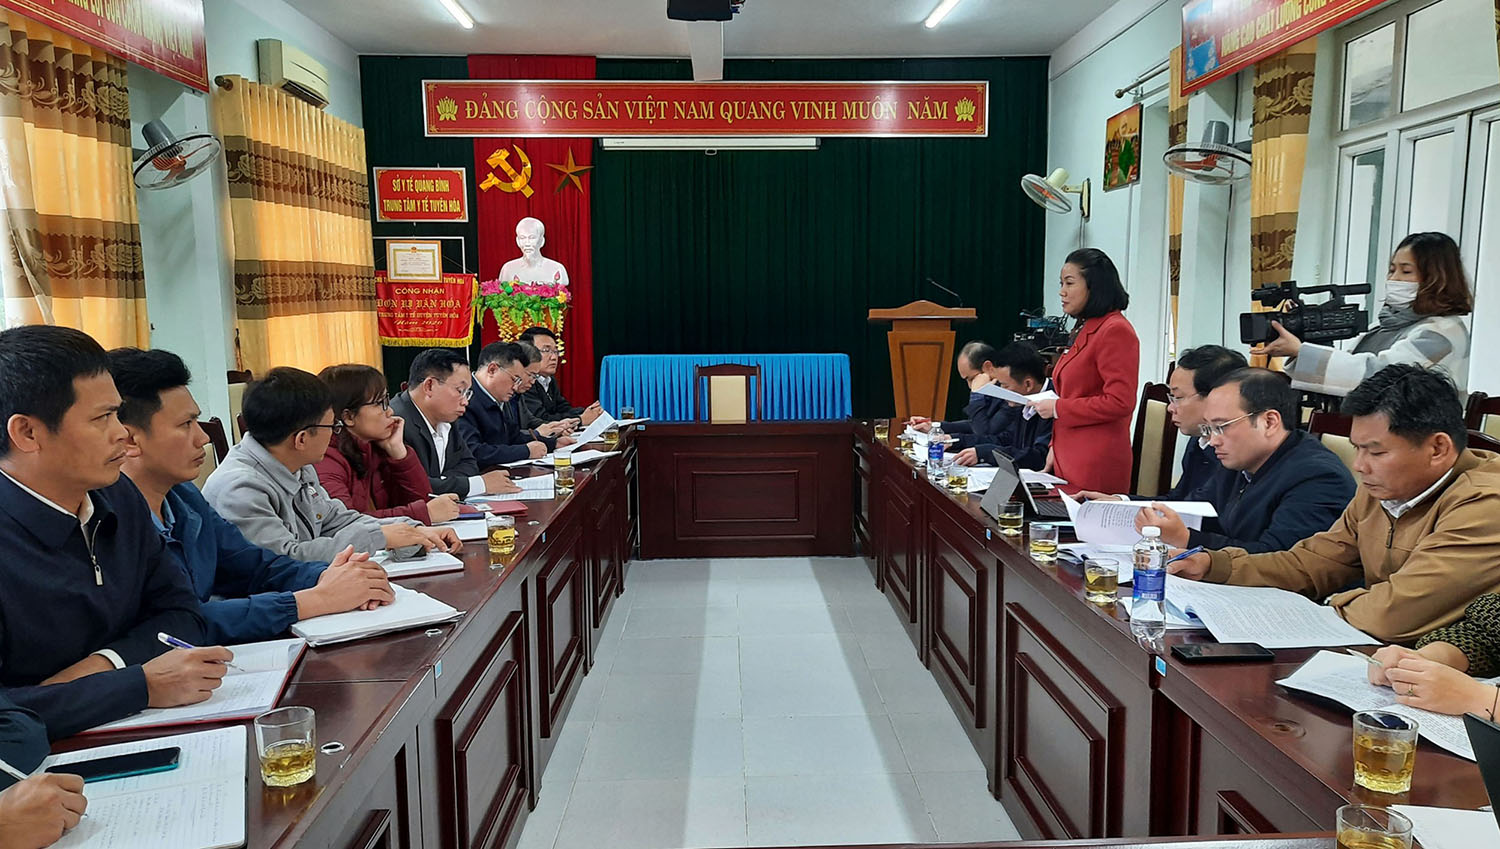 Đồng chí Phó trưởng đoàn chuyên trách Đoàn ĐBQH Nguyễn Minh Tâm phát biểu kết luận tại buổi làm việc với huyện Minh Hóa